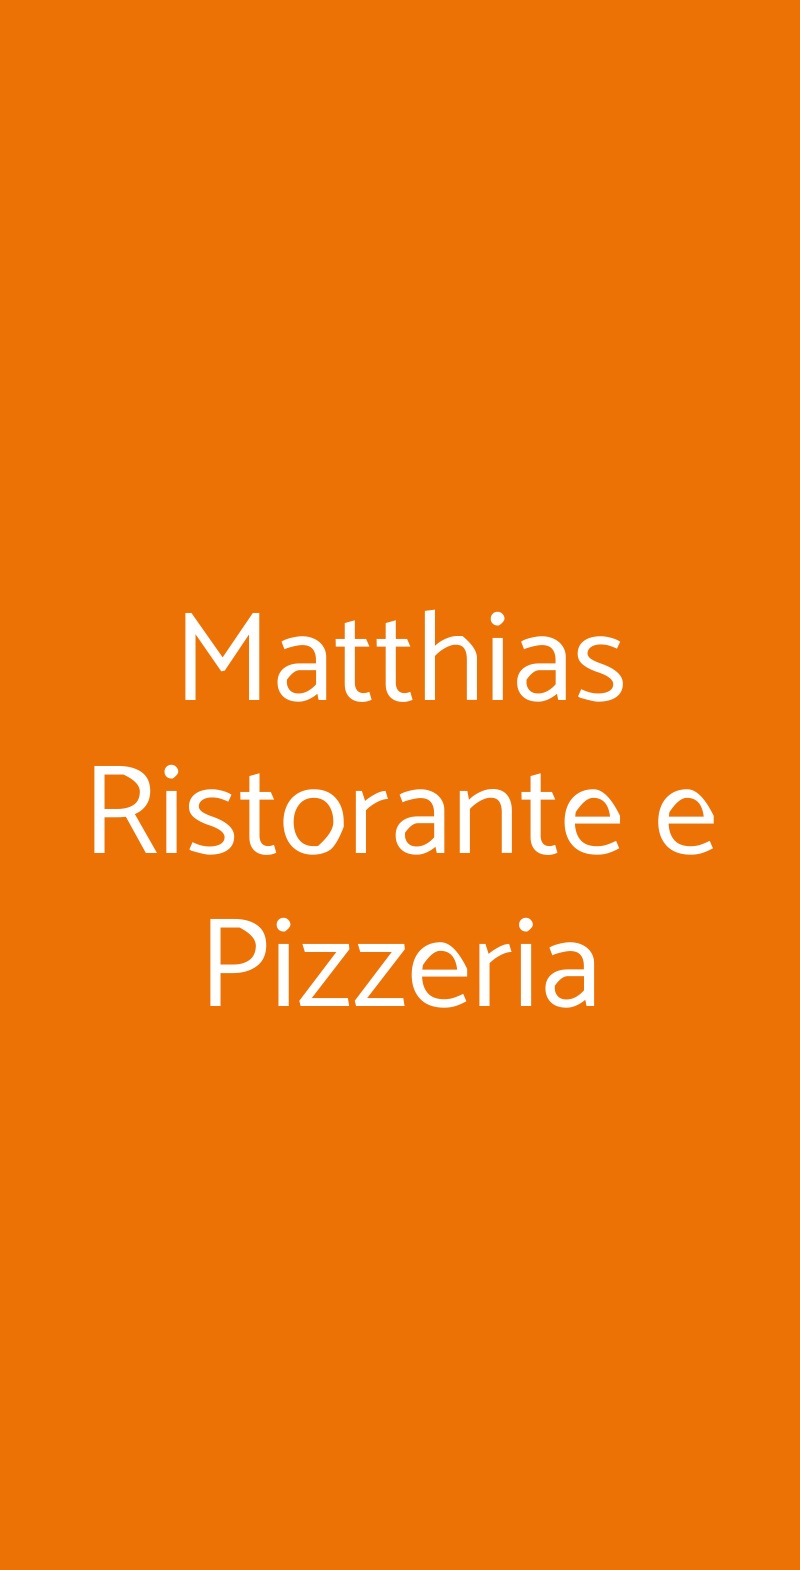 Matthias Ristorante e Pizzeria Reggio Emilia menù 1 pagina